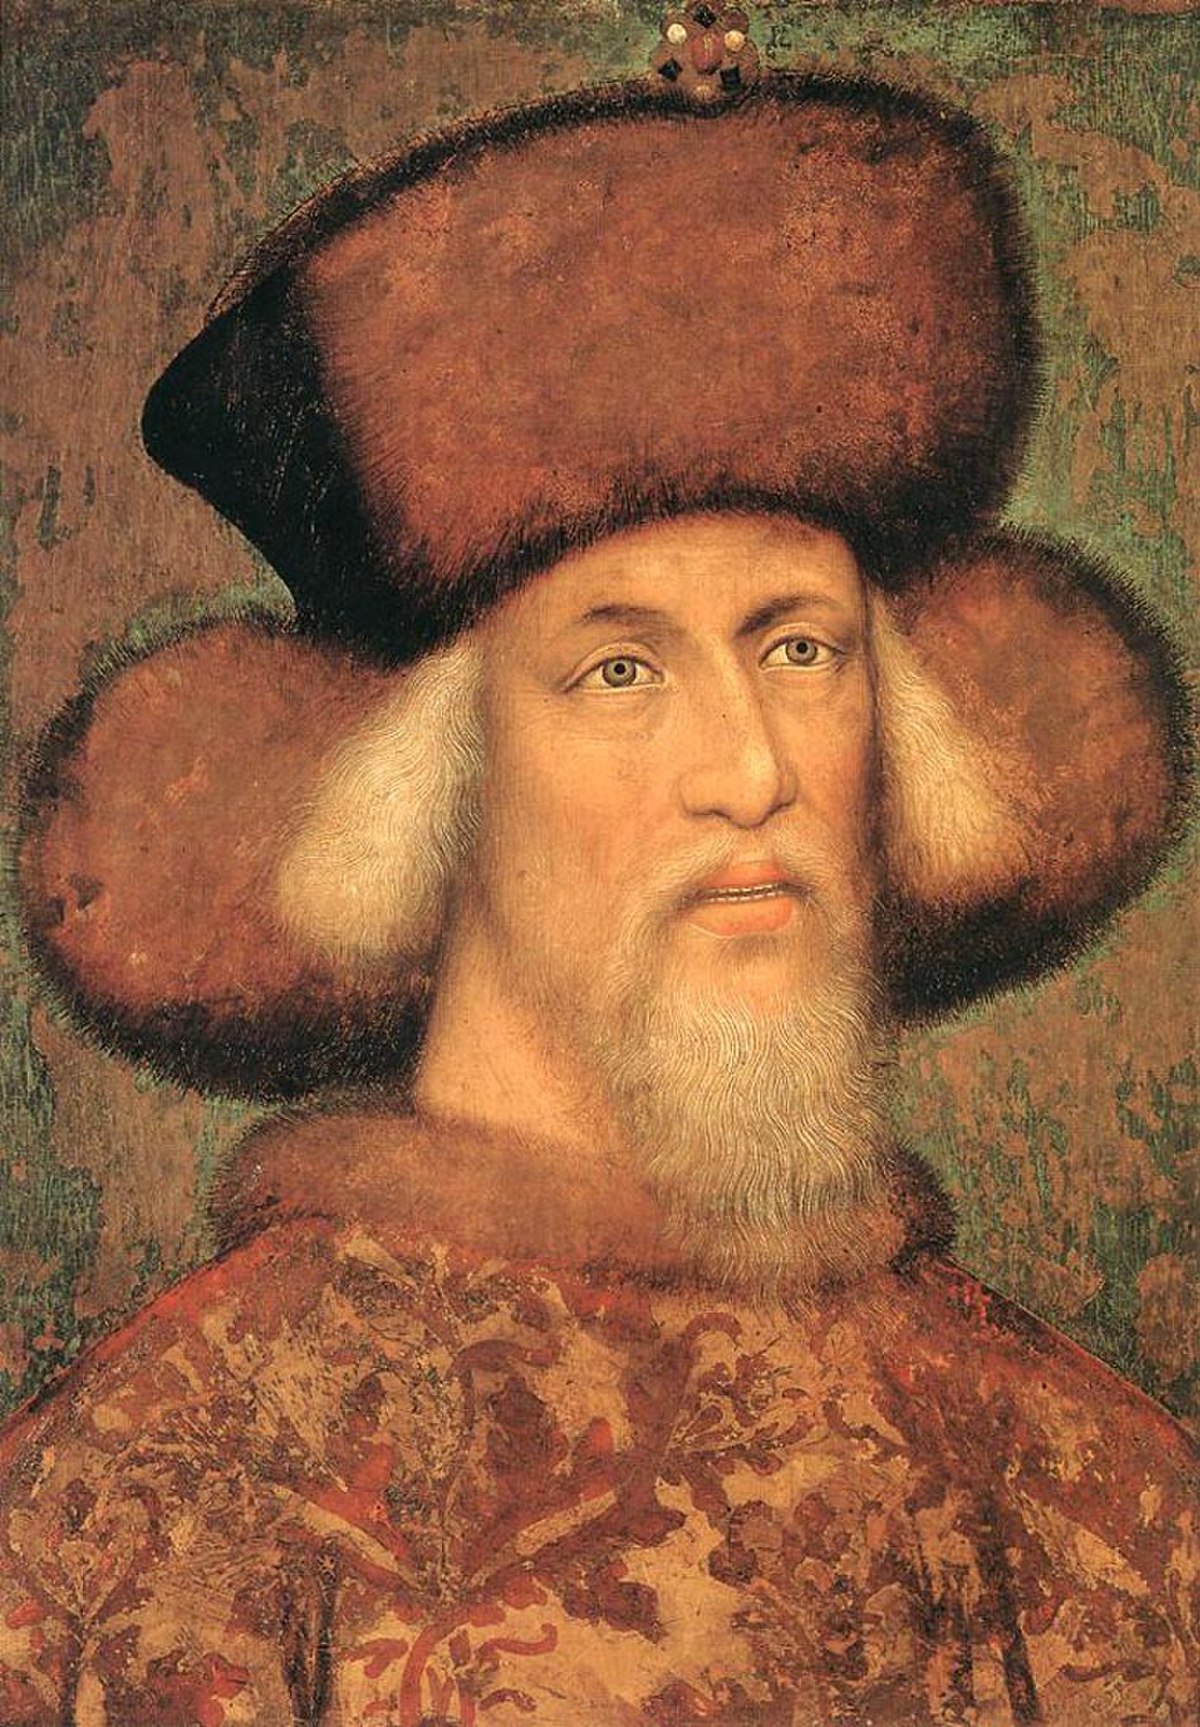 Sigismund ၏အုပ်ချုပ်မှု၊ သန့်ရှင်းသောရောမဧကရာဇ်